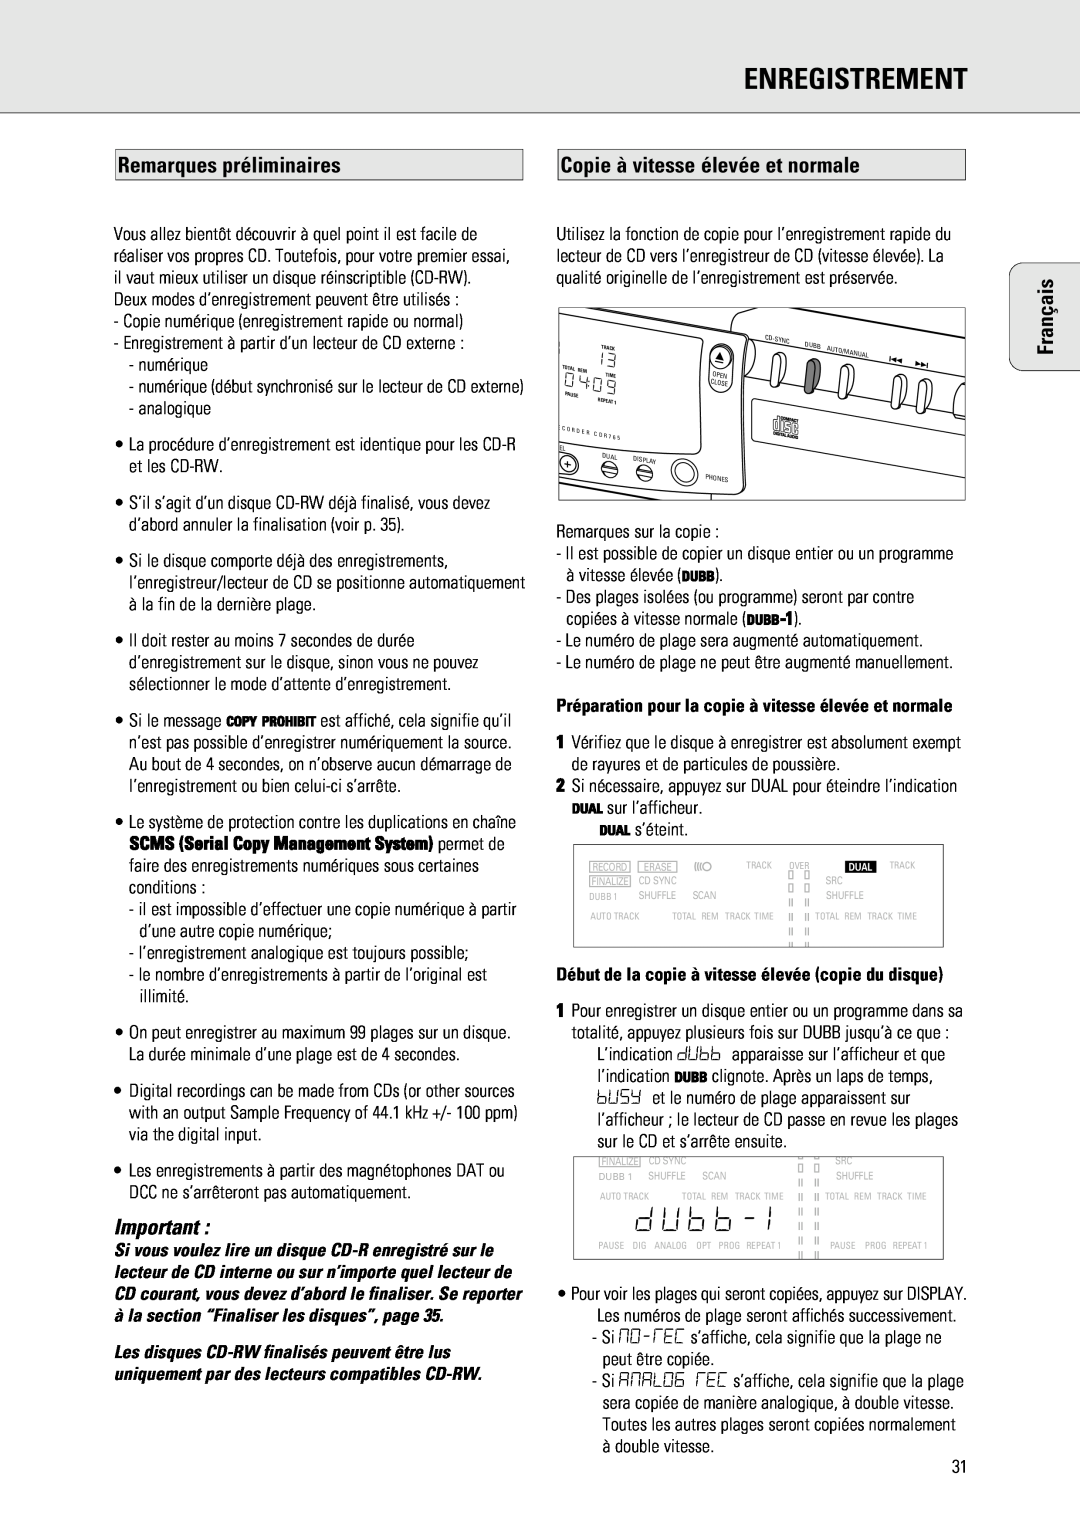 Philips 765 manual Enregistrement, Remarques préliminaires, Copie à vitesse élevée et normale, Français 